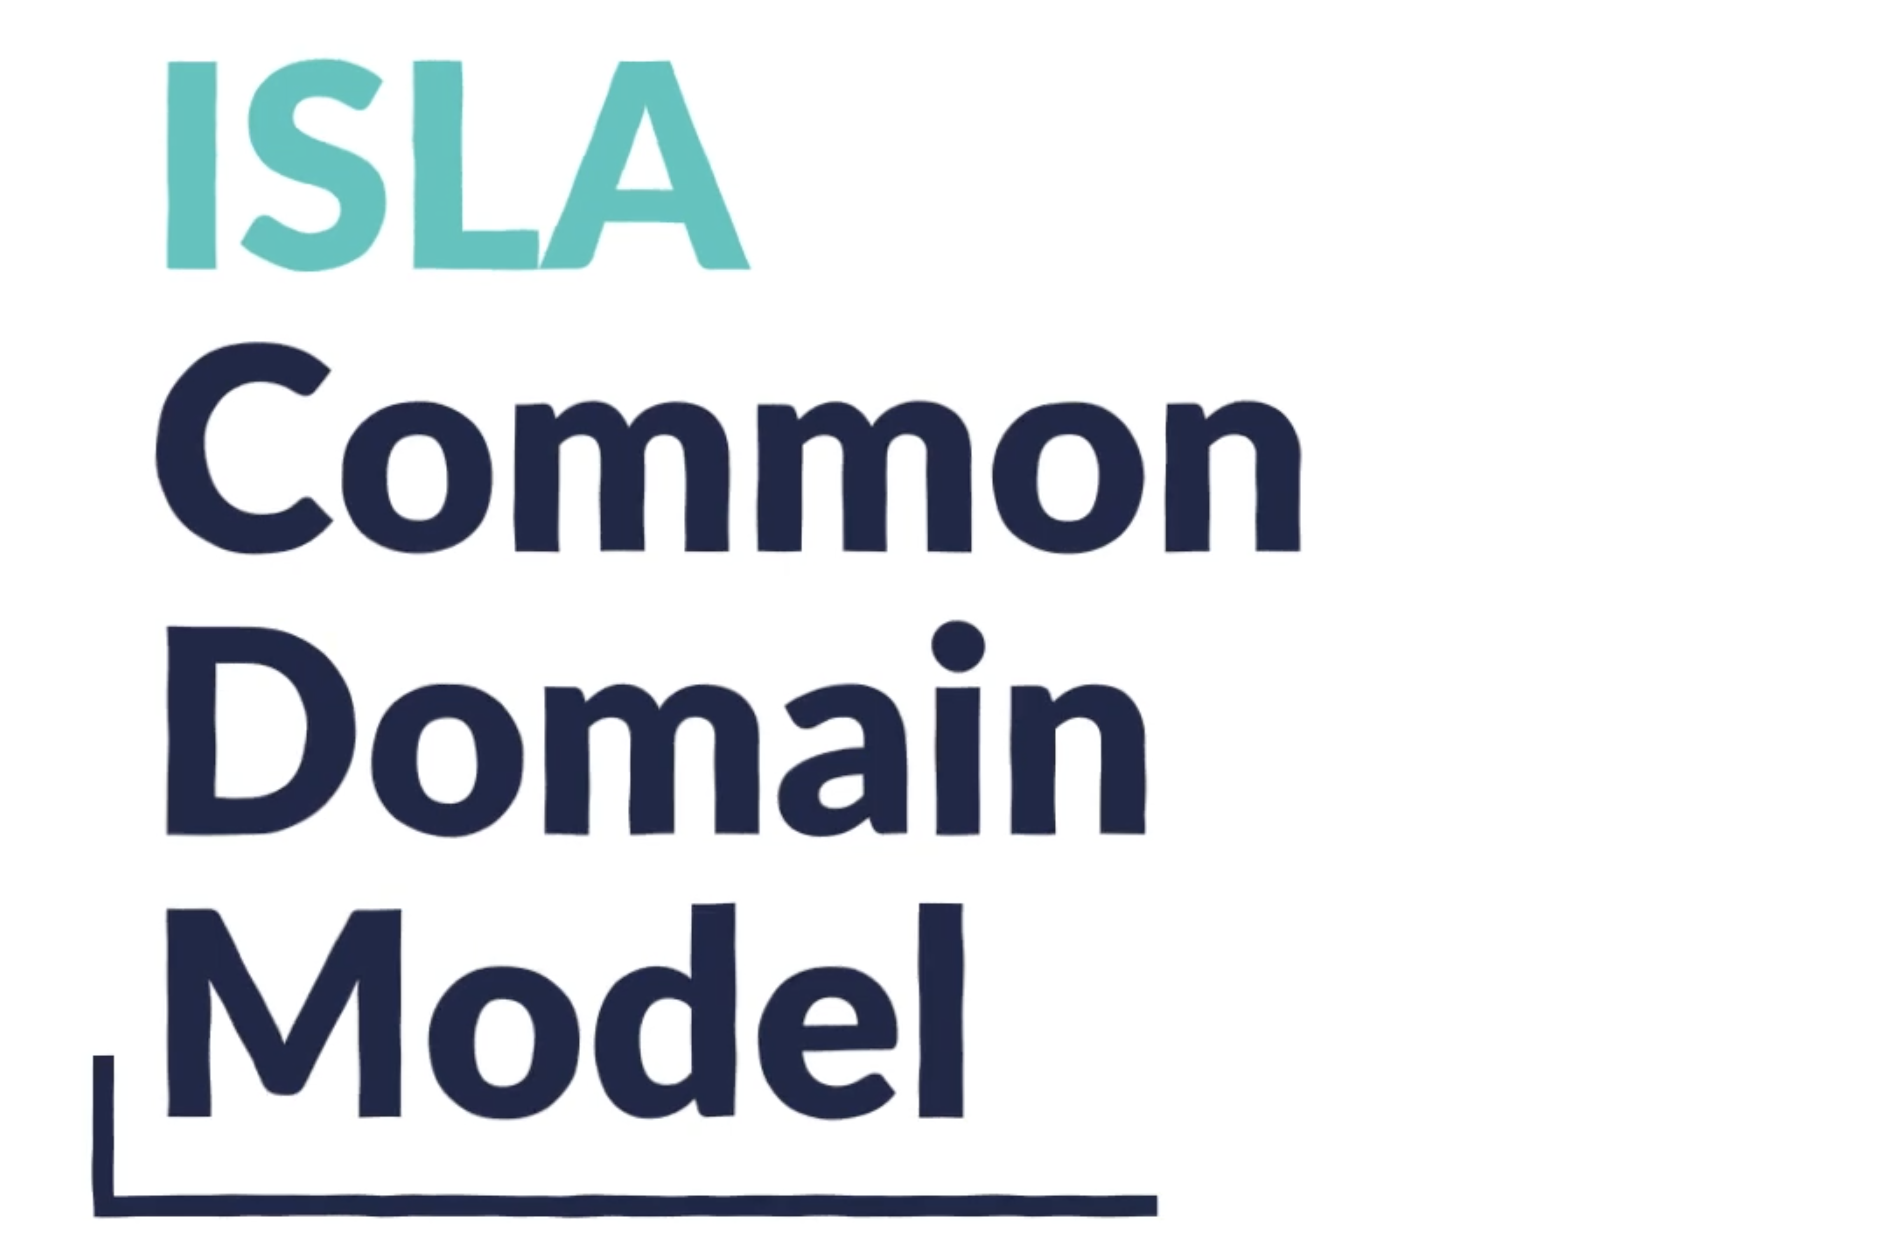 ISLA Common Domain Model